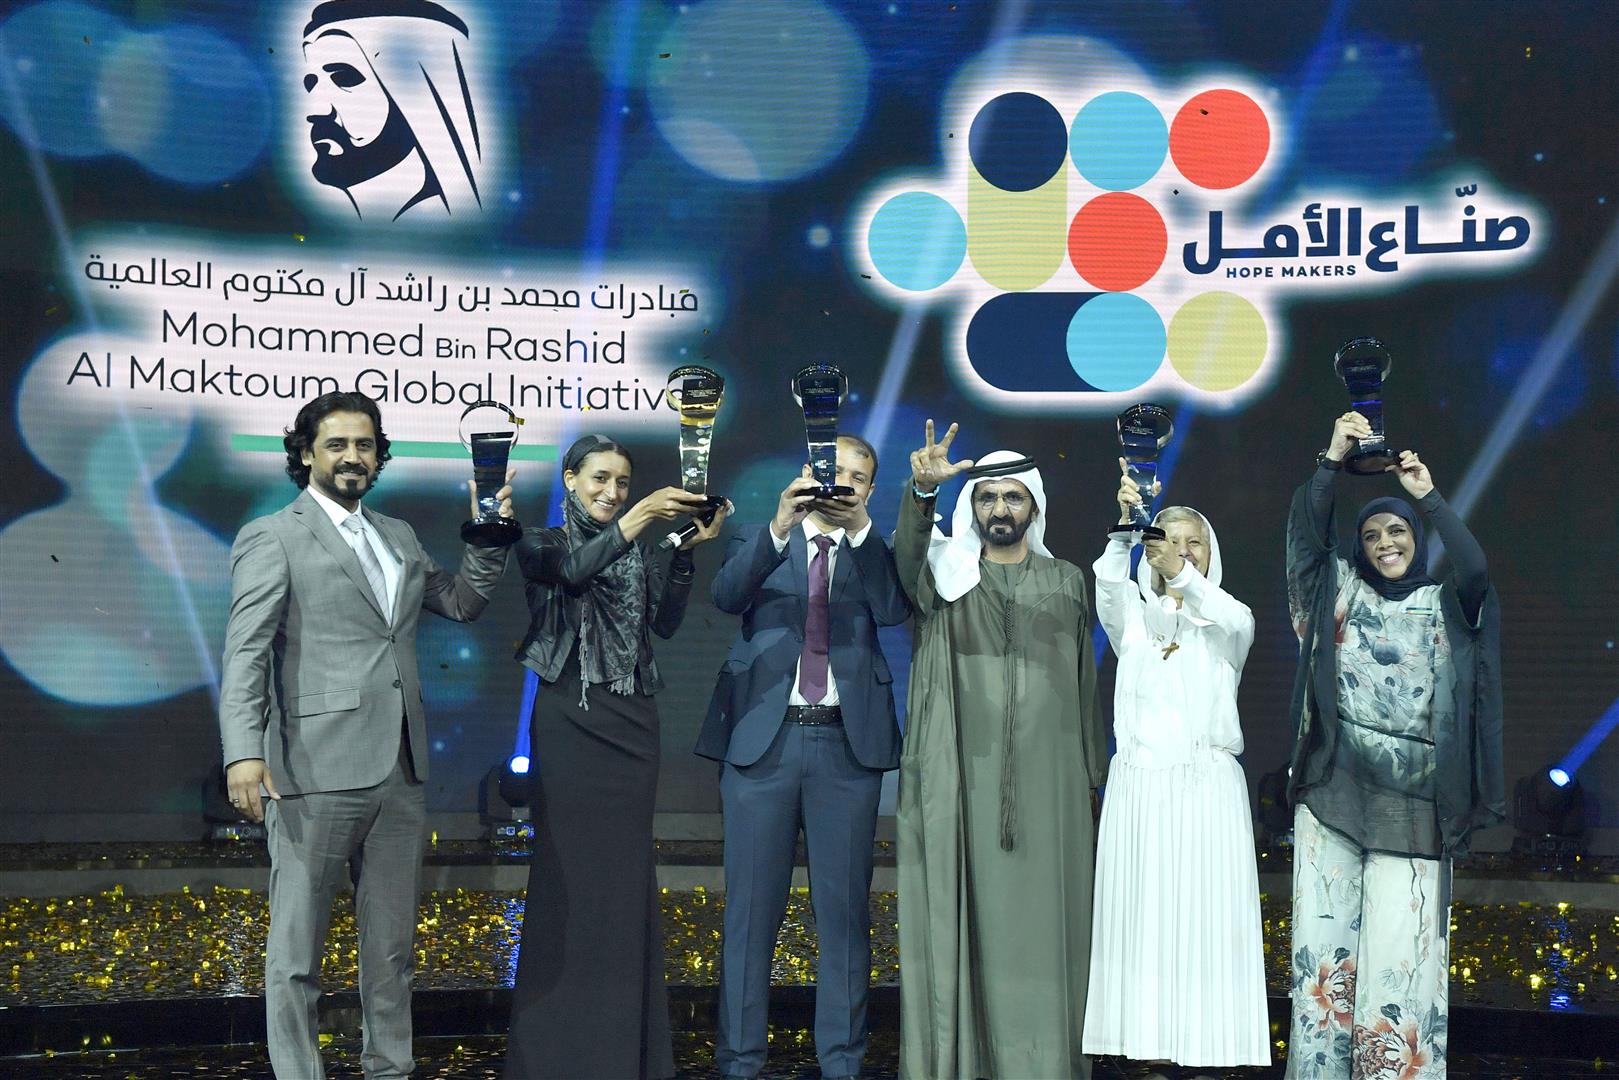 Arab Hope Makers 2018 Awards - Coming Soon in UAE